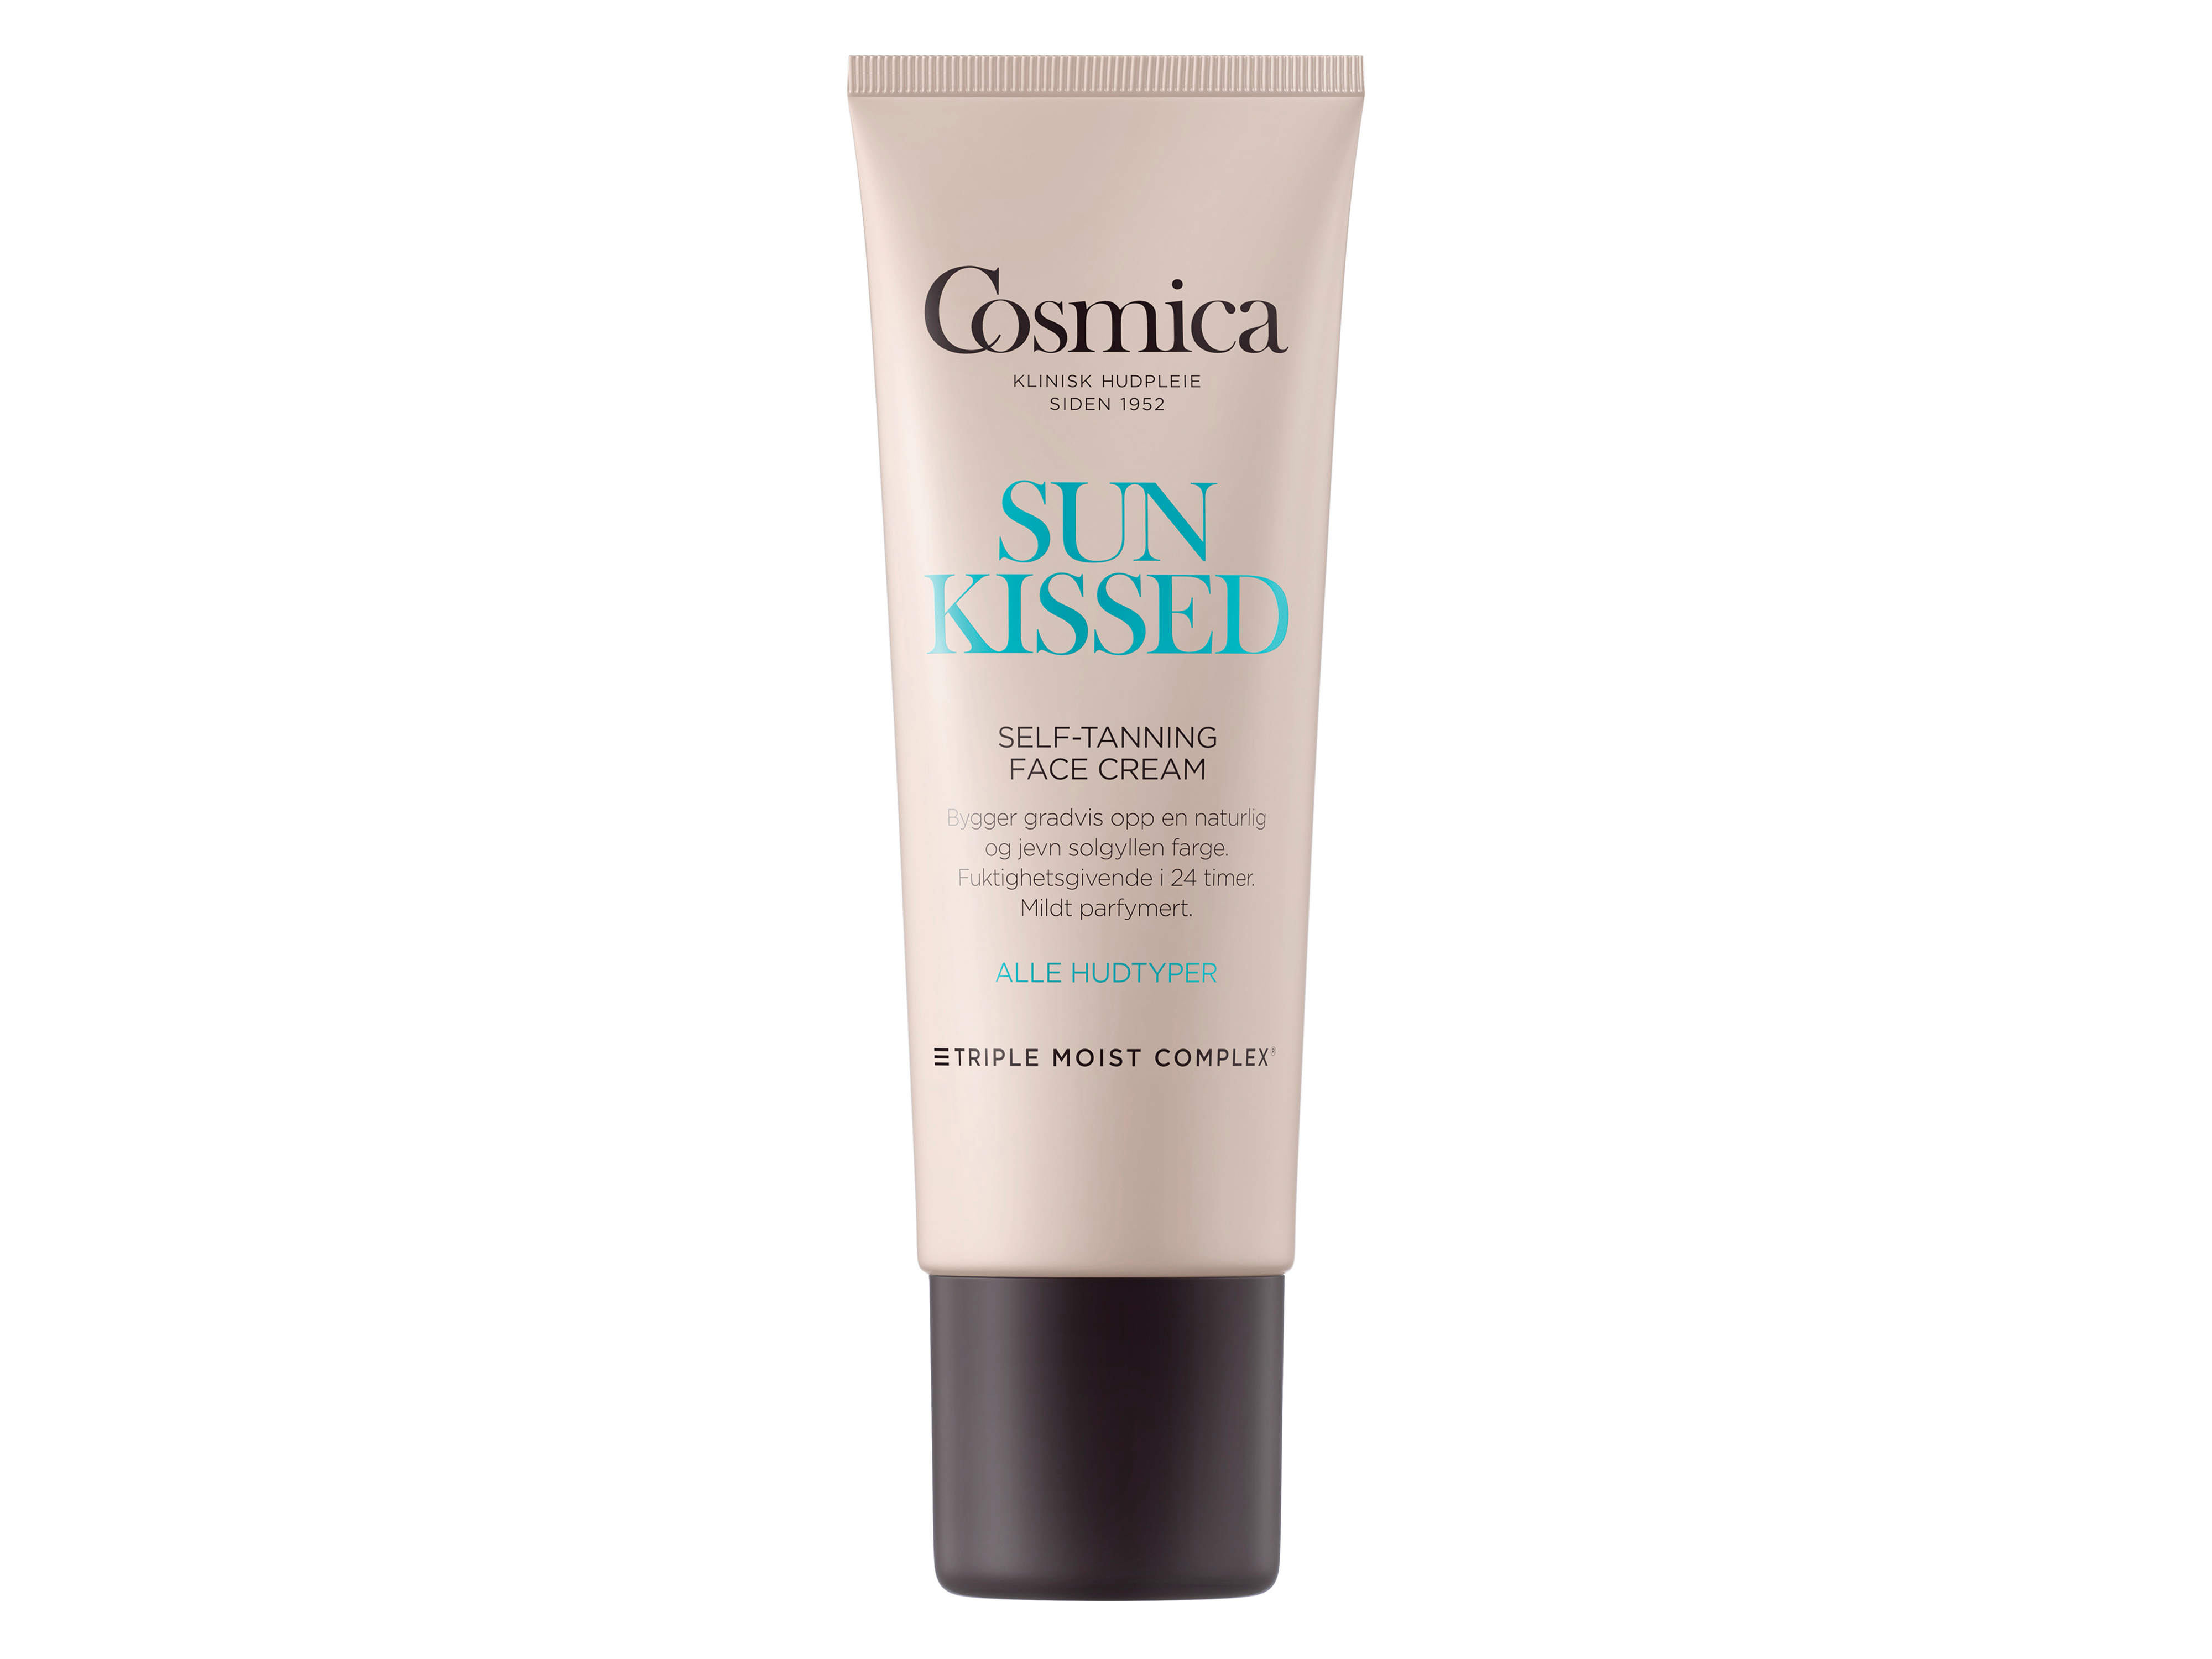 Cosmica Sunkissed Self-tanning Face Cream, 50 ml